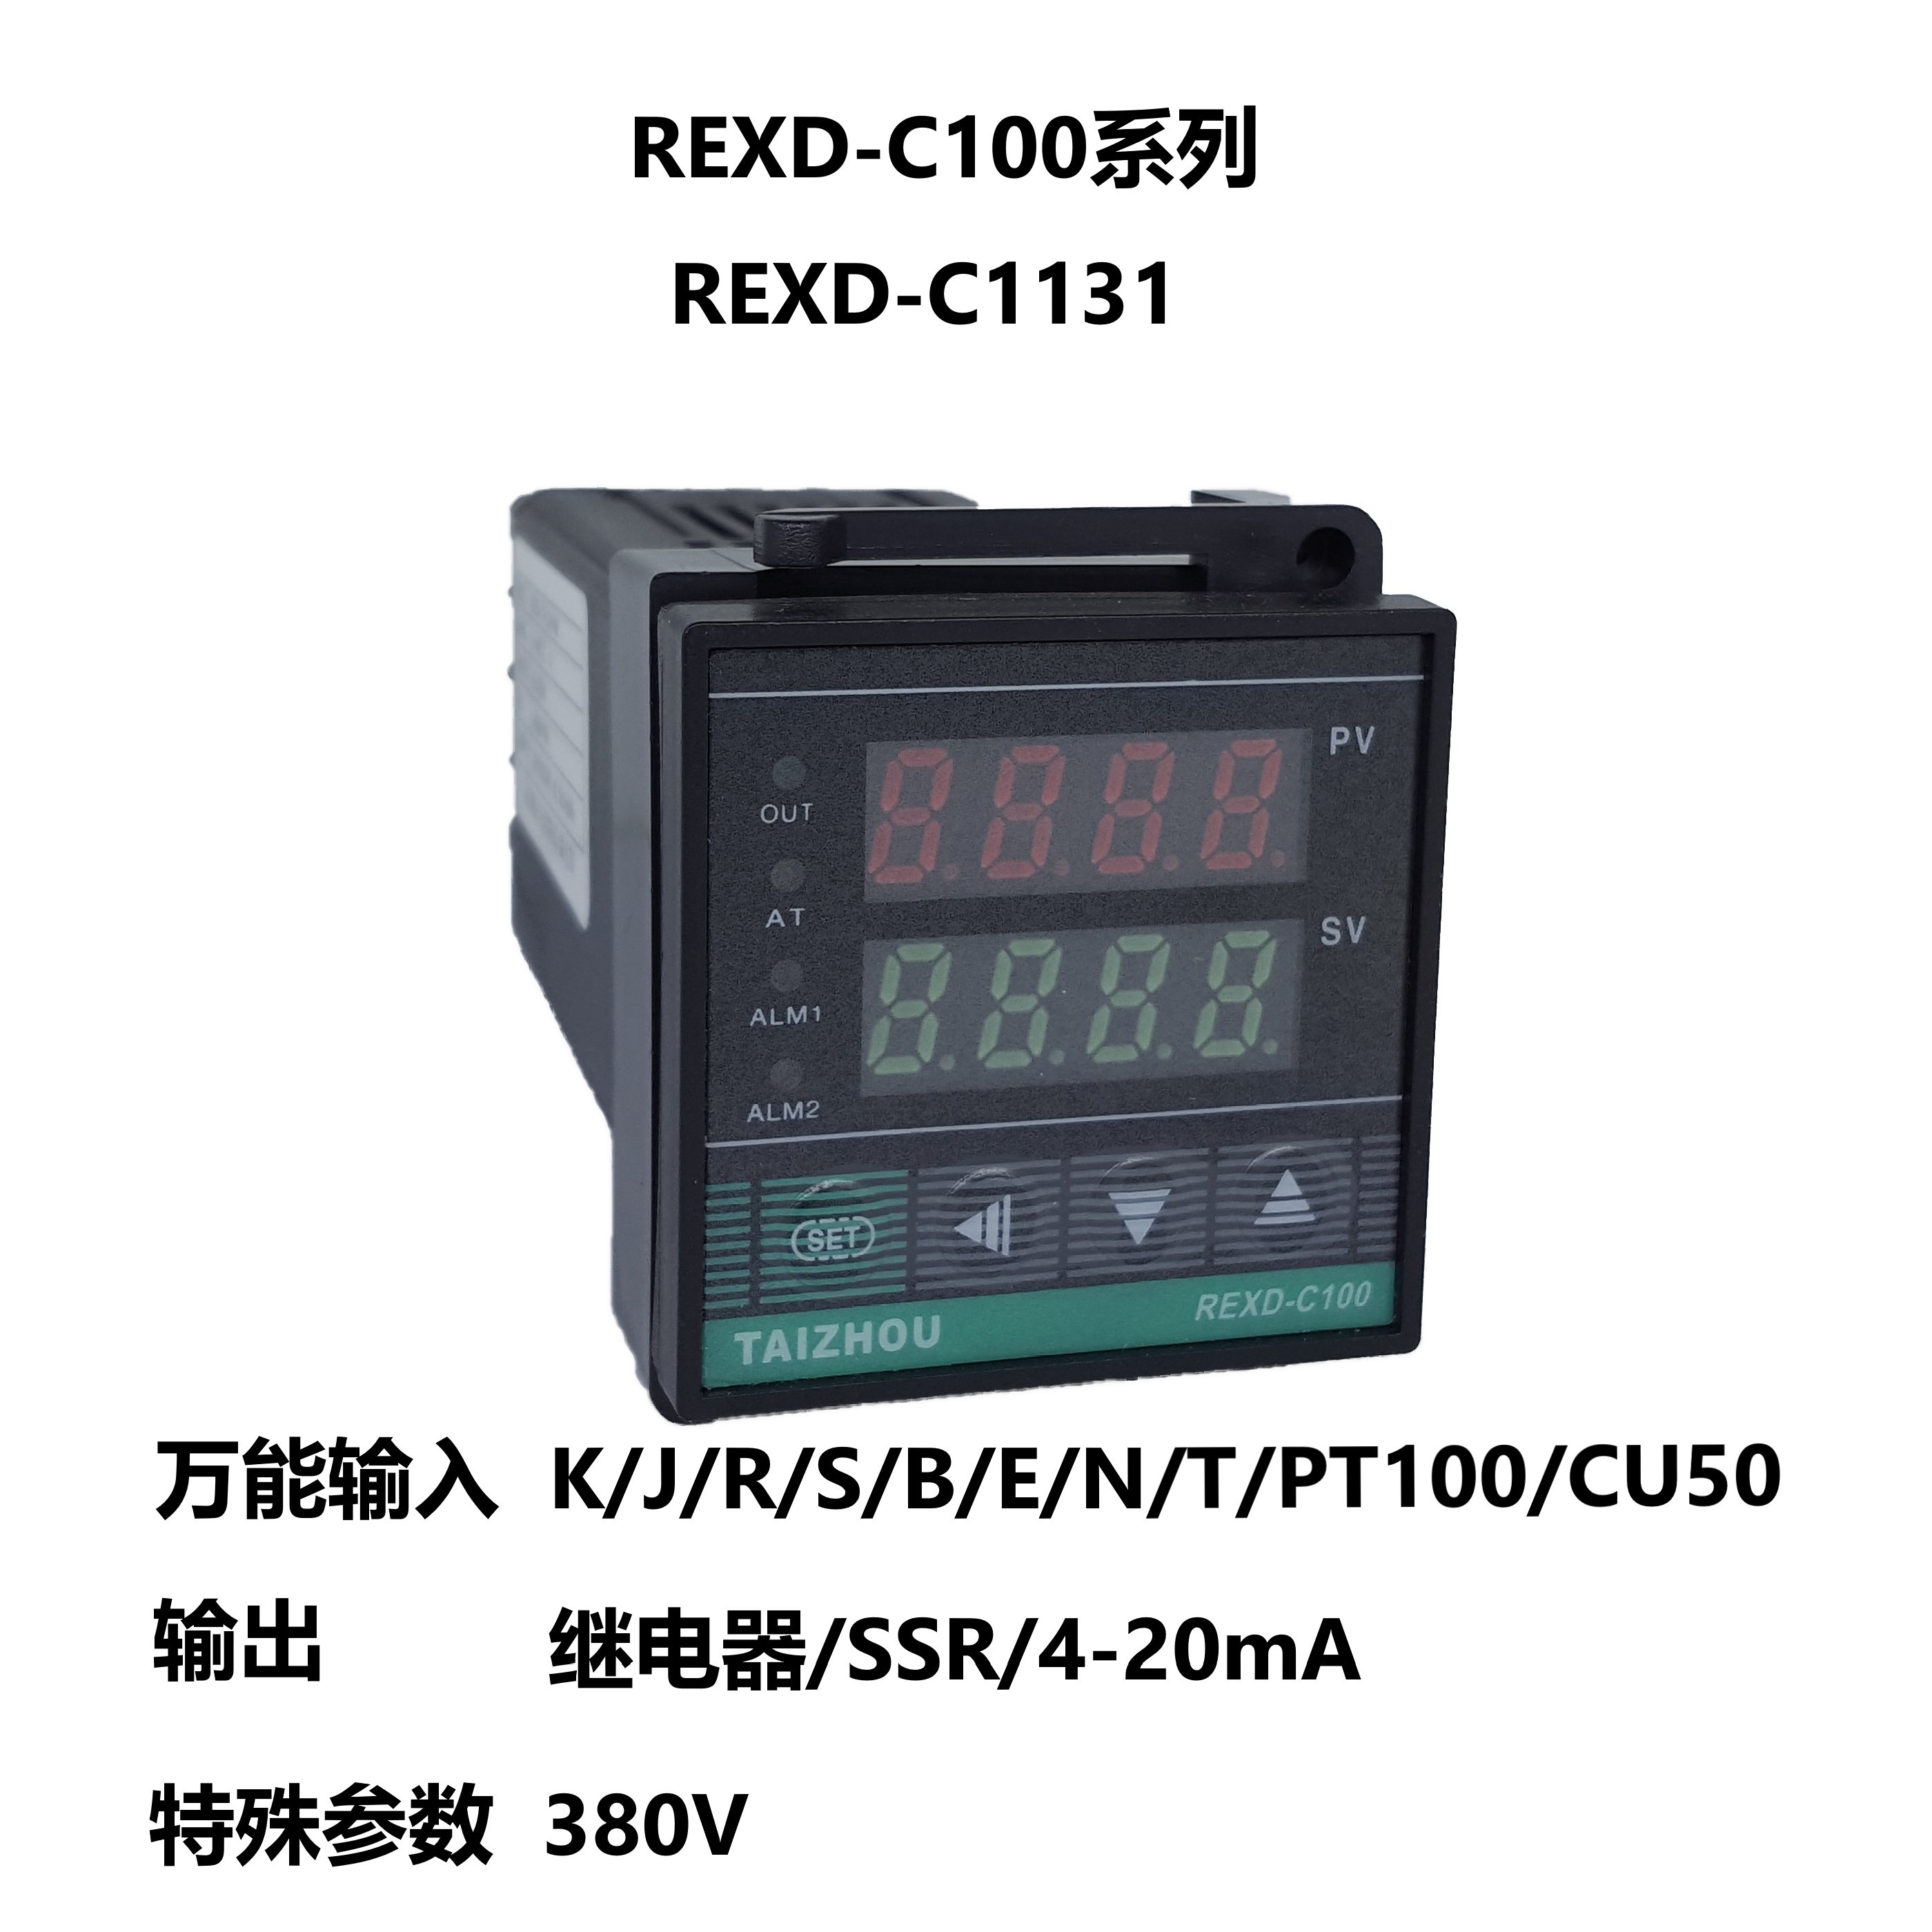 太洲电气 C100 REXD-C1131 数显智能温控仪 电加热温控器 口罩机 五金/工具 温控仪 原图主图